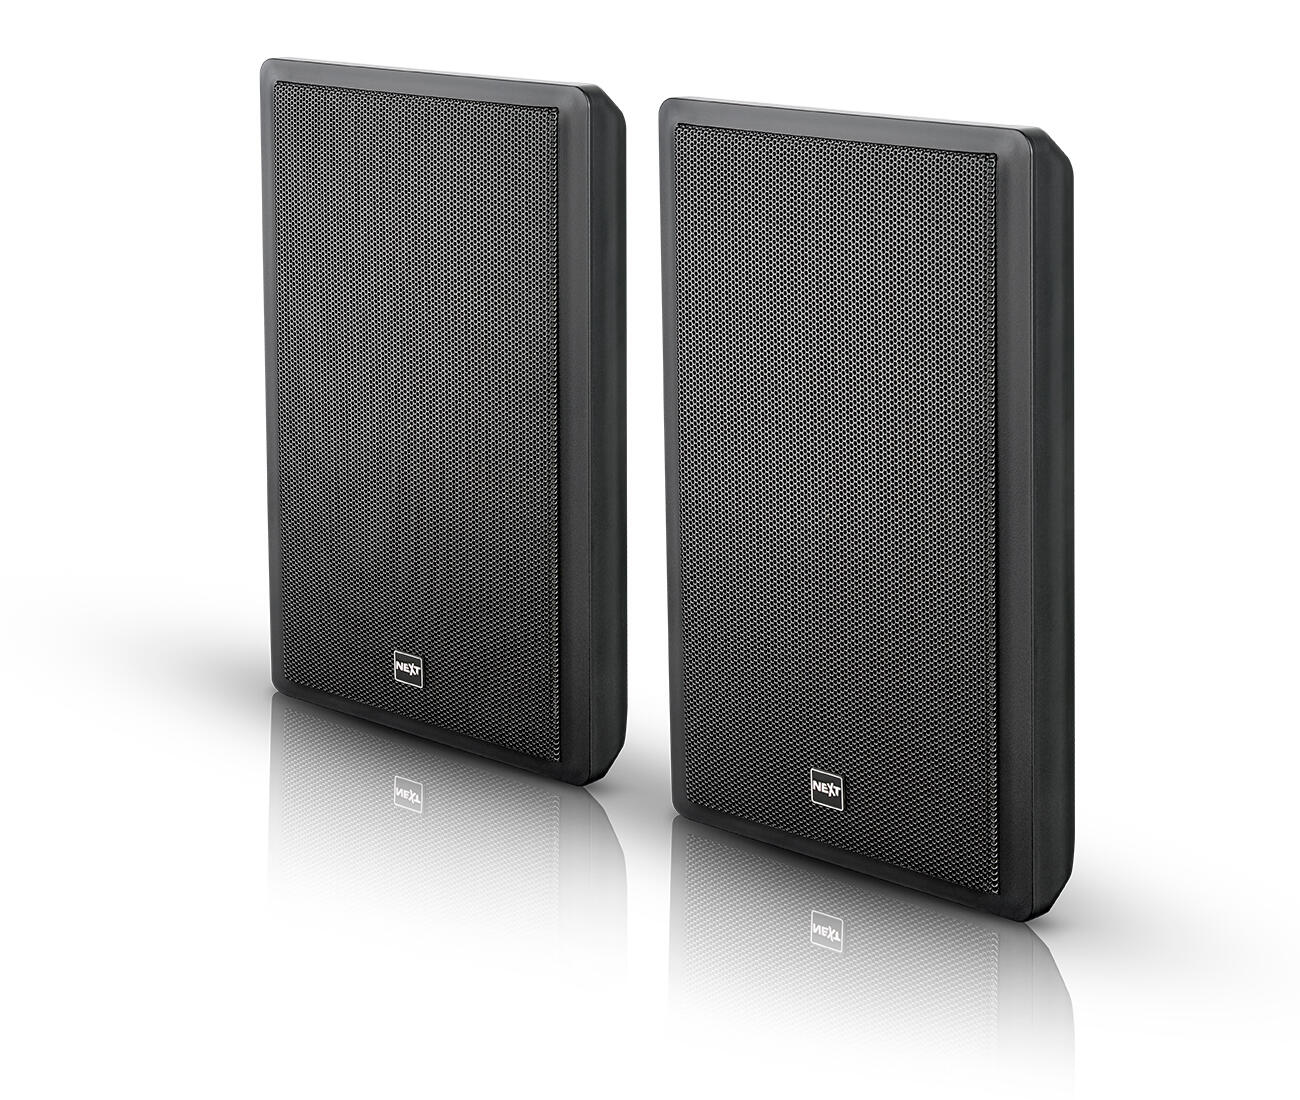 NEXT-Audiocom-w5f-thin-design-speaker